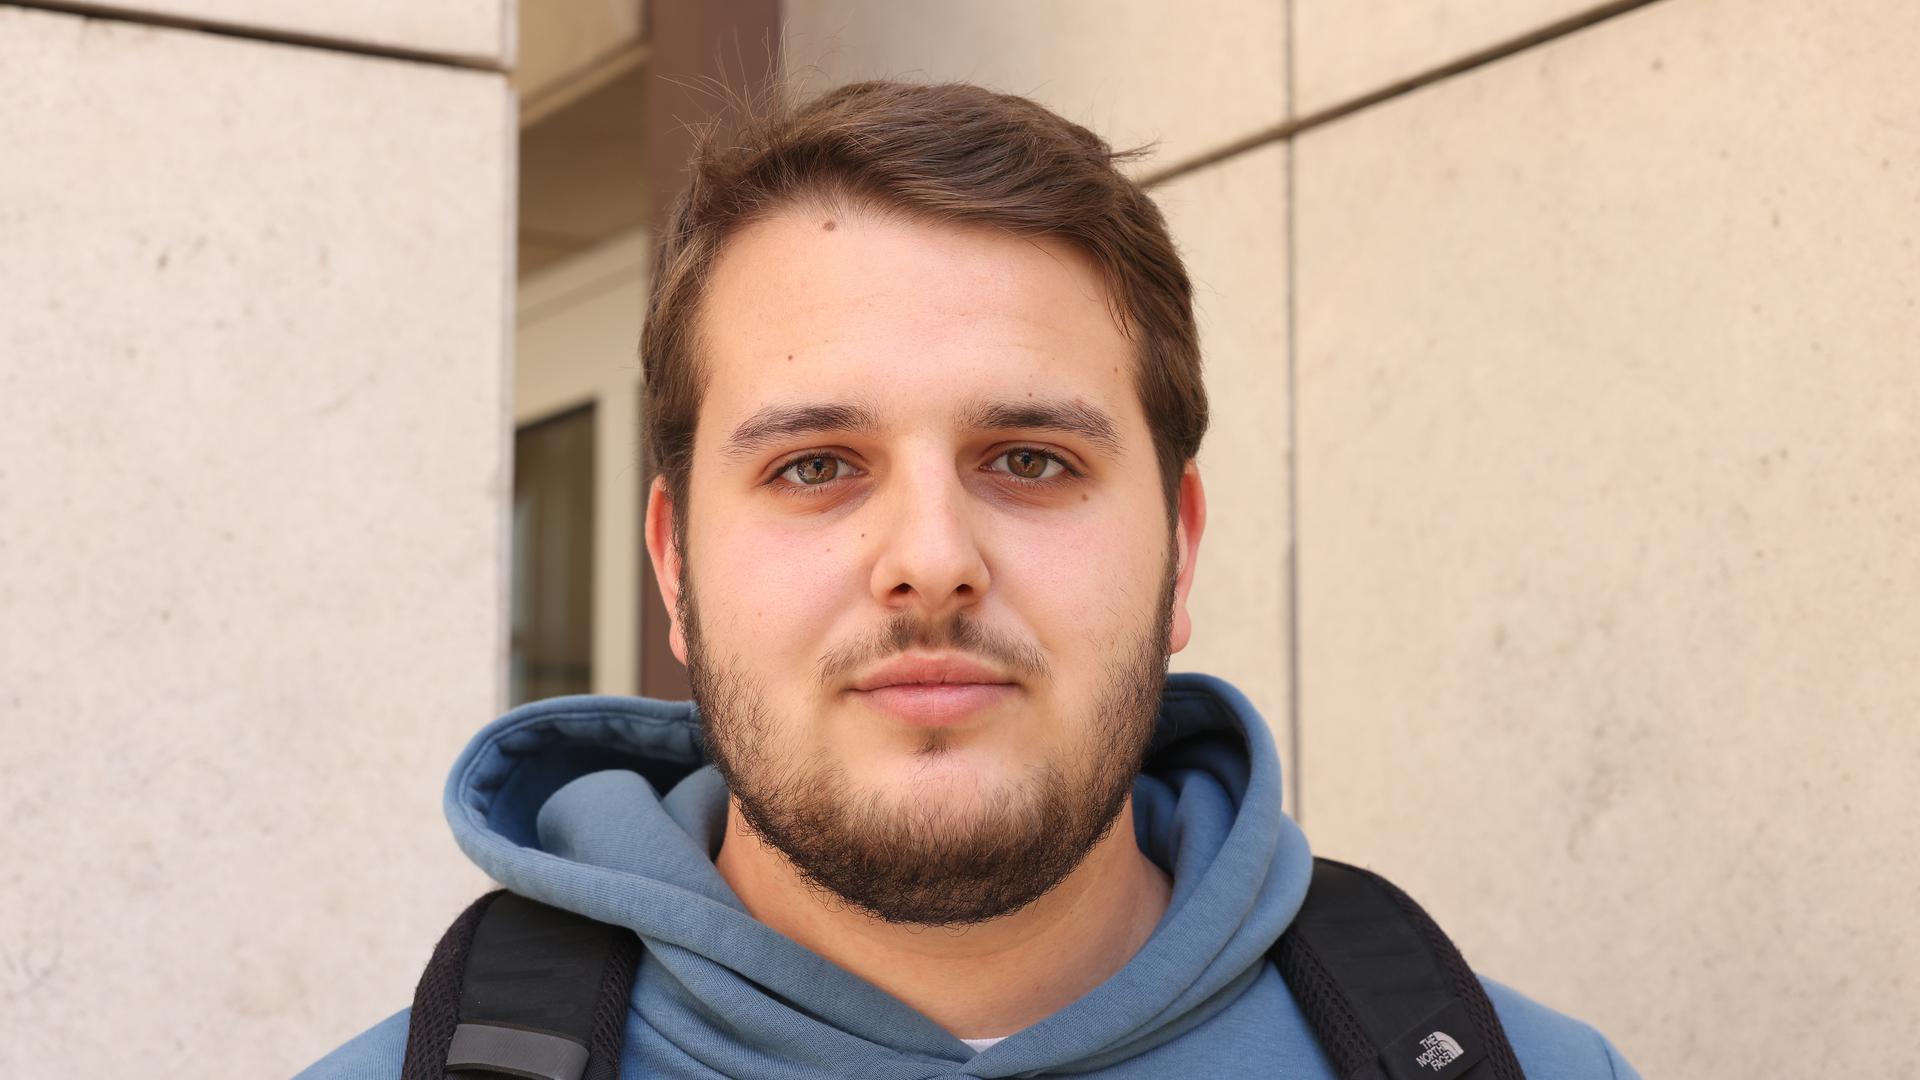 Der 20-jährige Max aus Monnerich hat am Dienstag seine erste Prüfung in Volkswirtschaftslehre geschrieben.